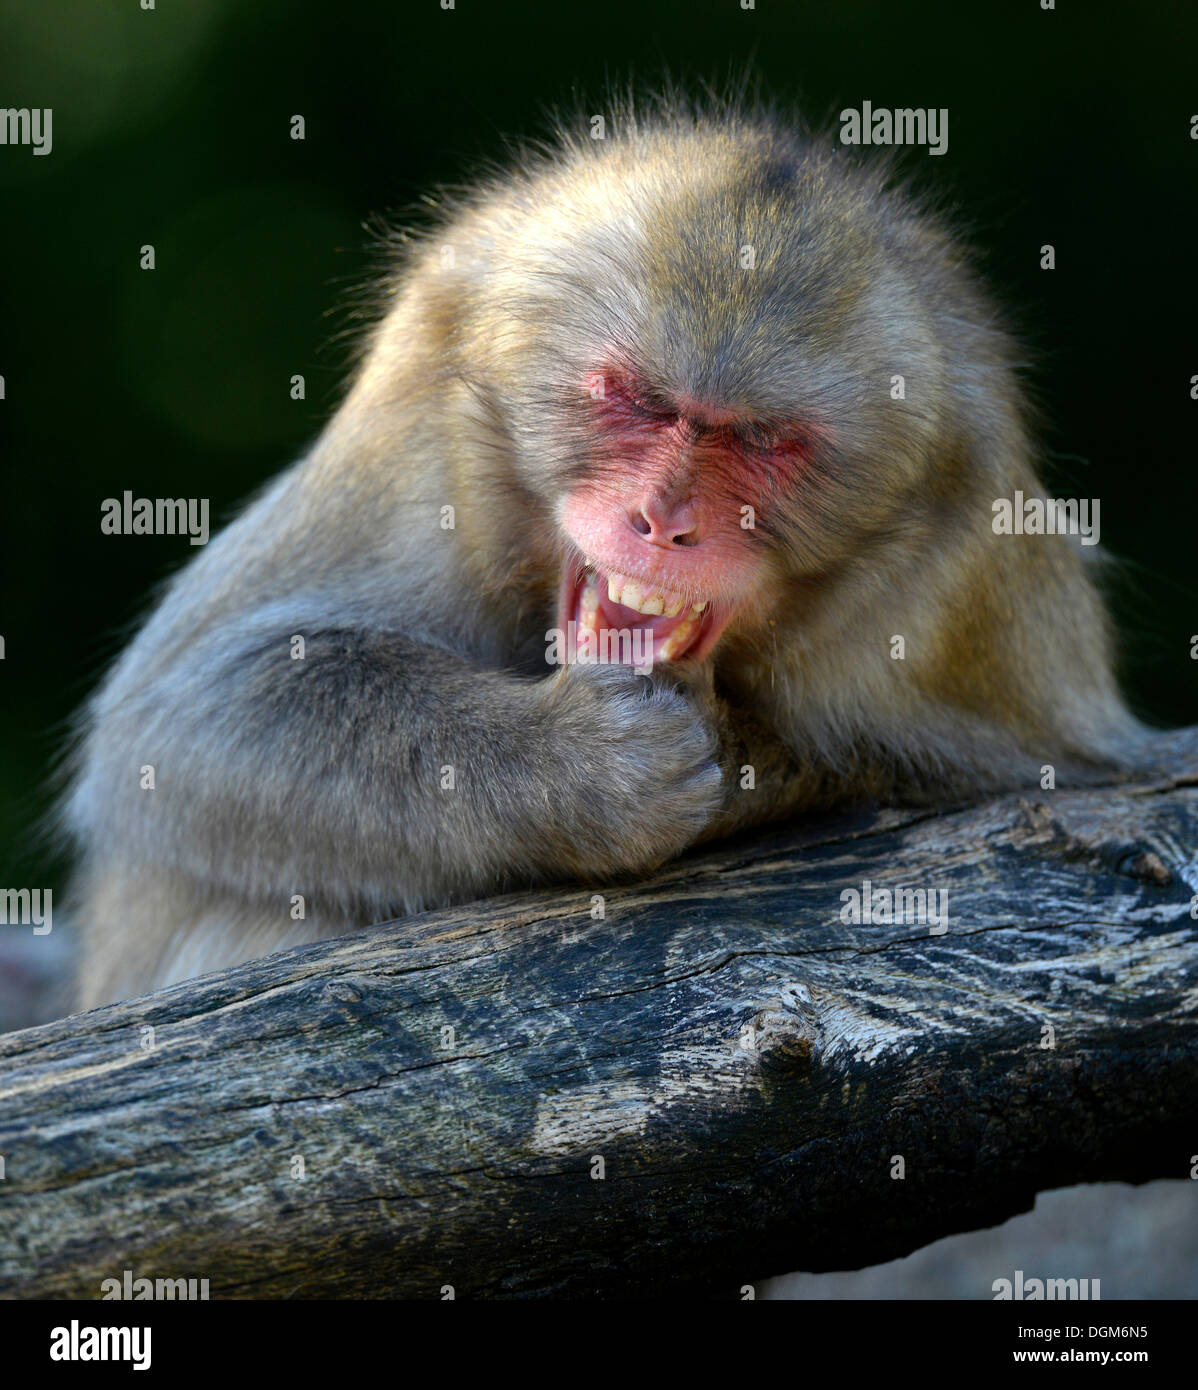 Nihonzaru ou macaques japonais (Macaca fuscata), apparemment rire dans sa manche, la comédie, le comportement social, natif du Japon Banque D'Images